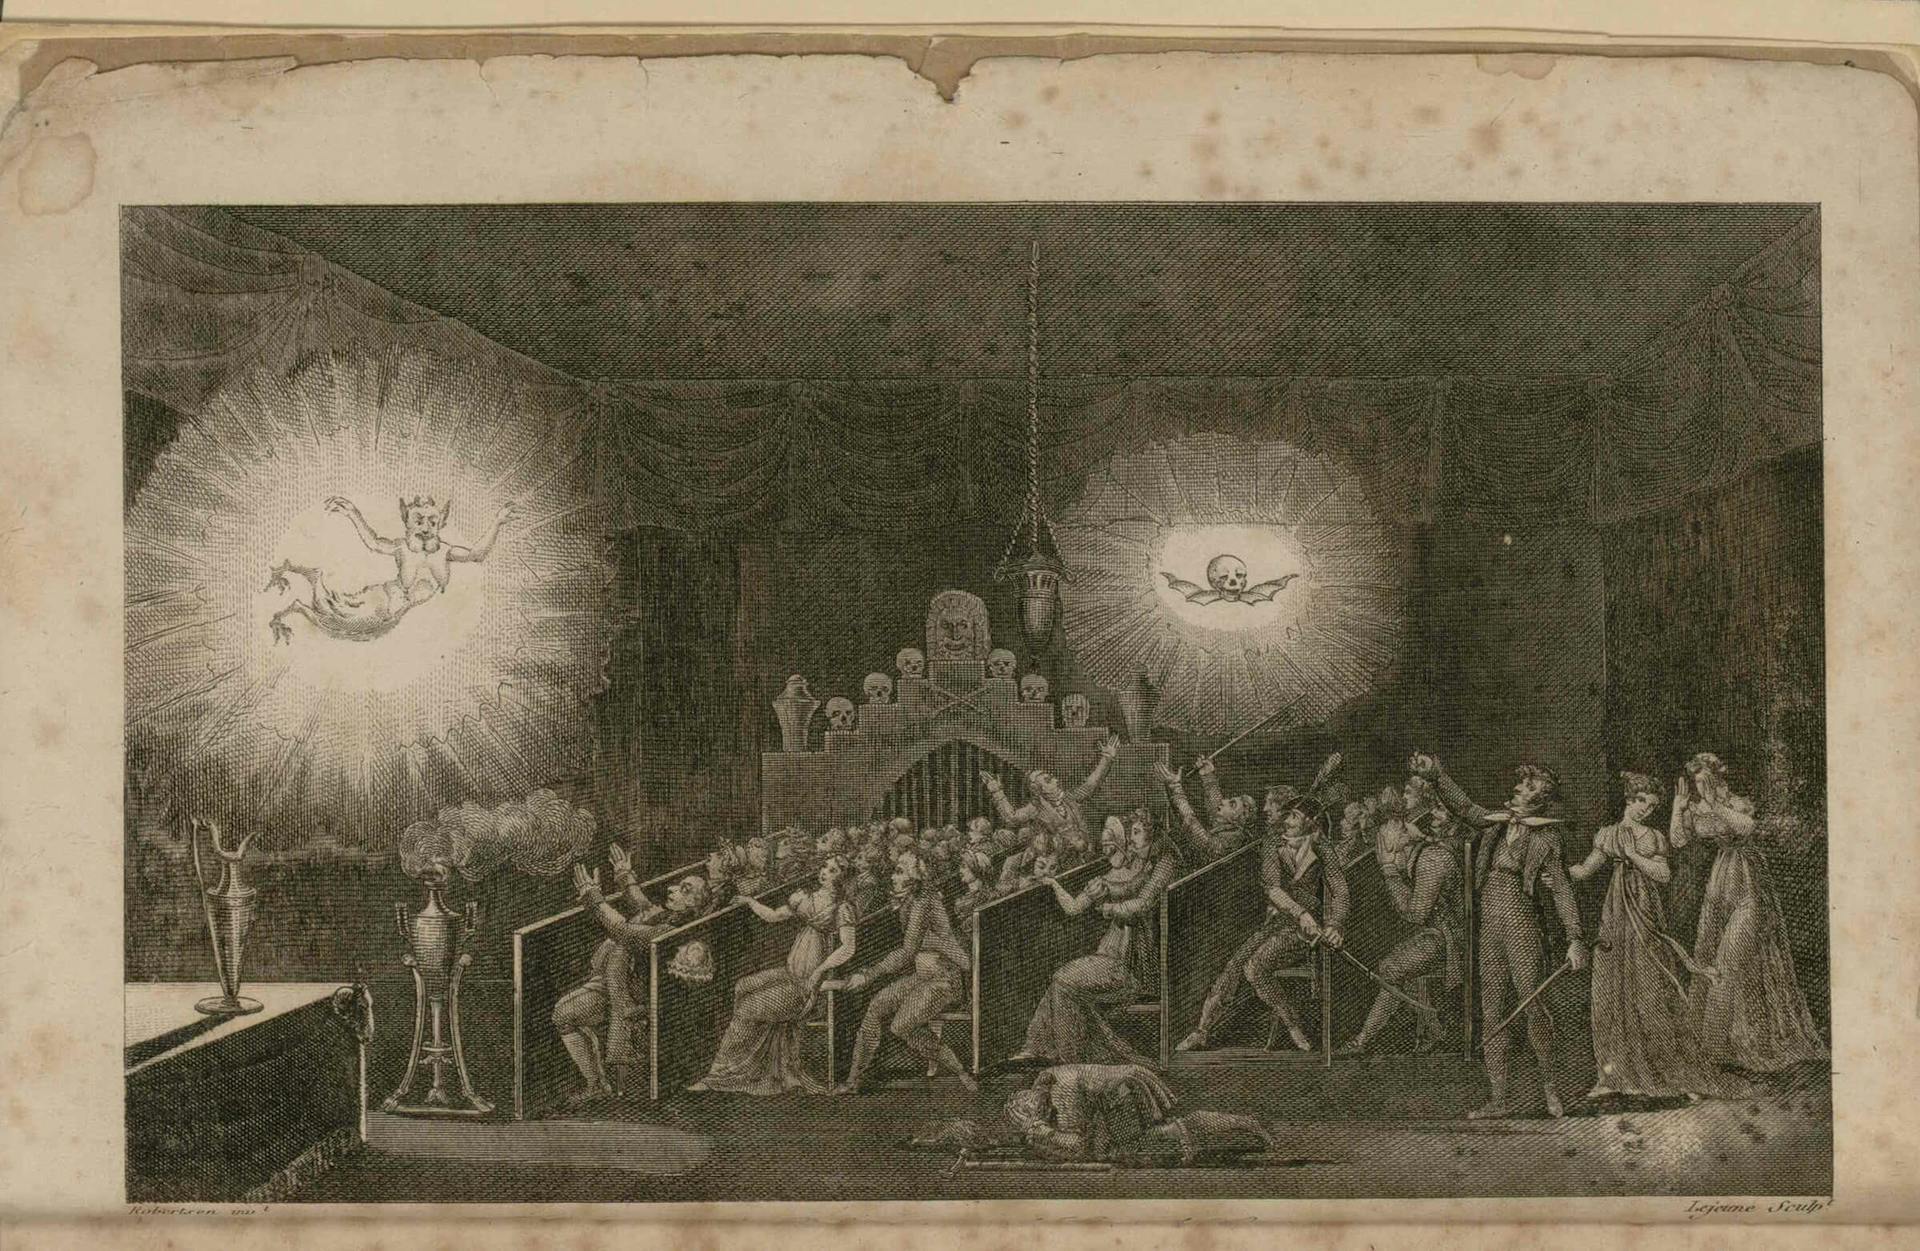 Robertson's phantasmagoria in the Cour des Capucines in 1797 